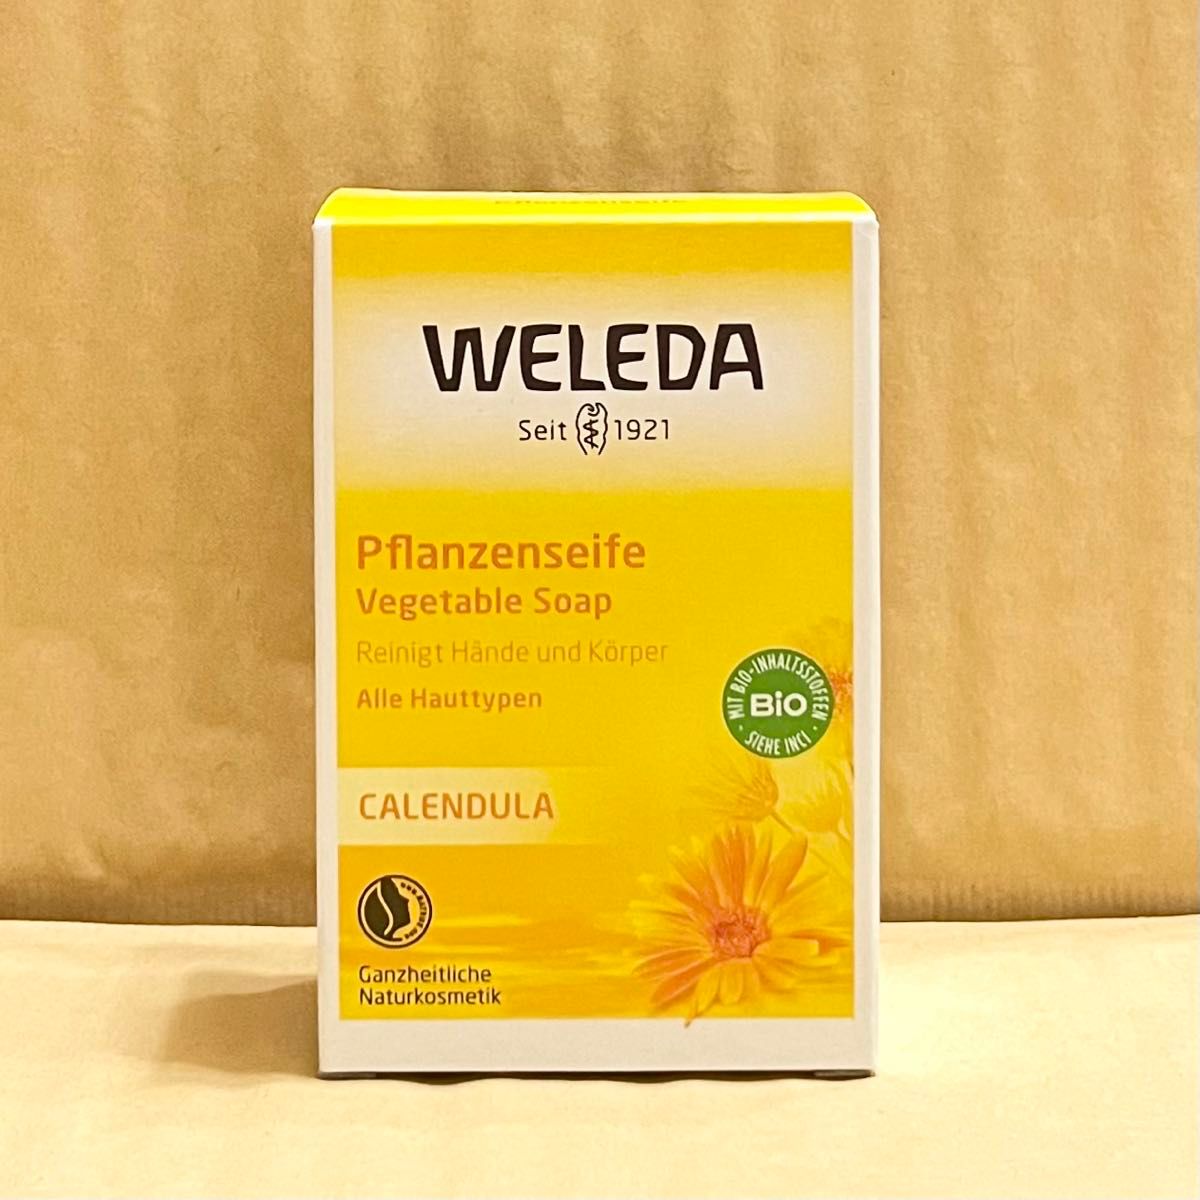 WELEDA ヴェレダ カレンドラ ソープ 100g 3セット 新品